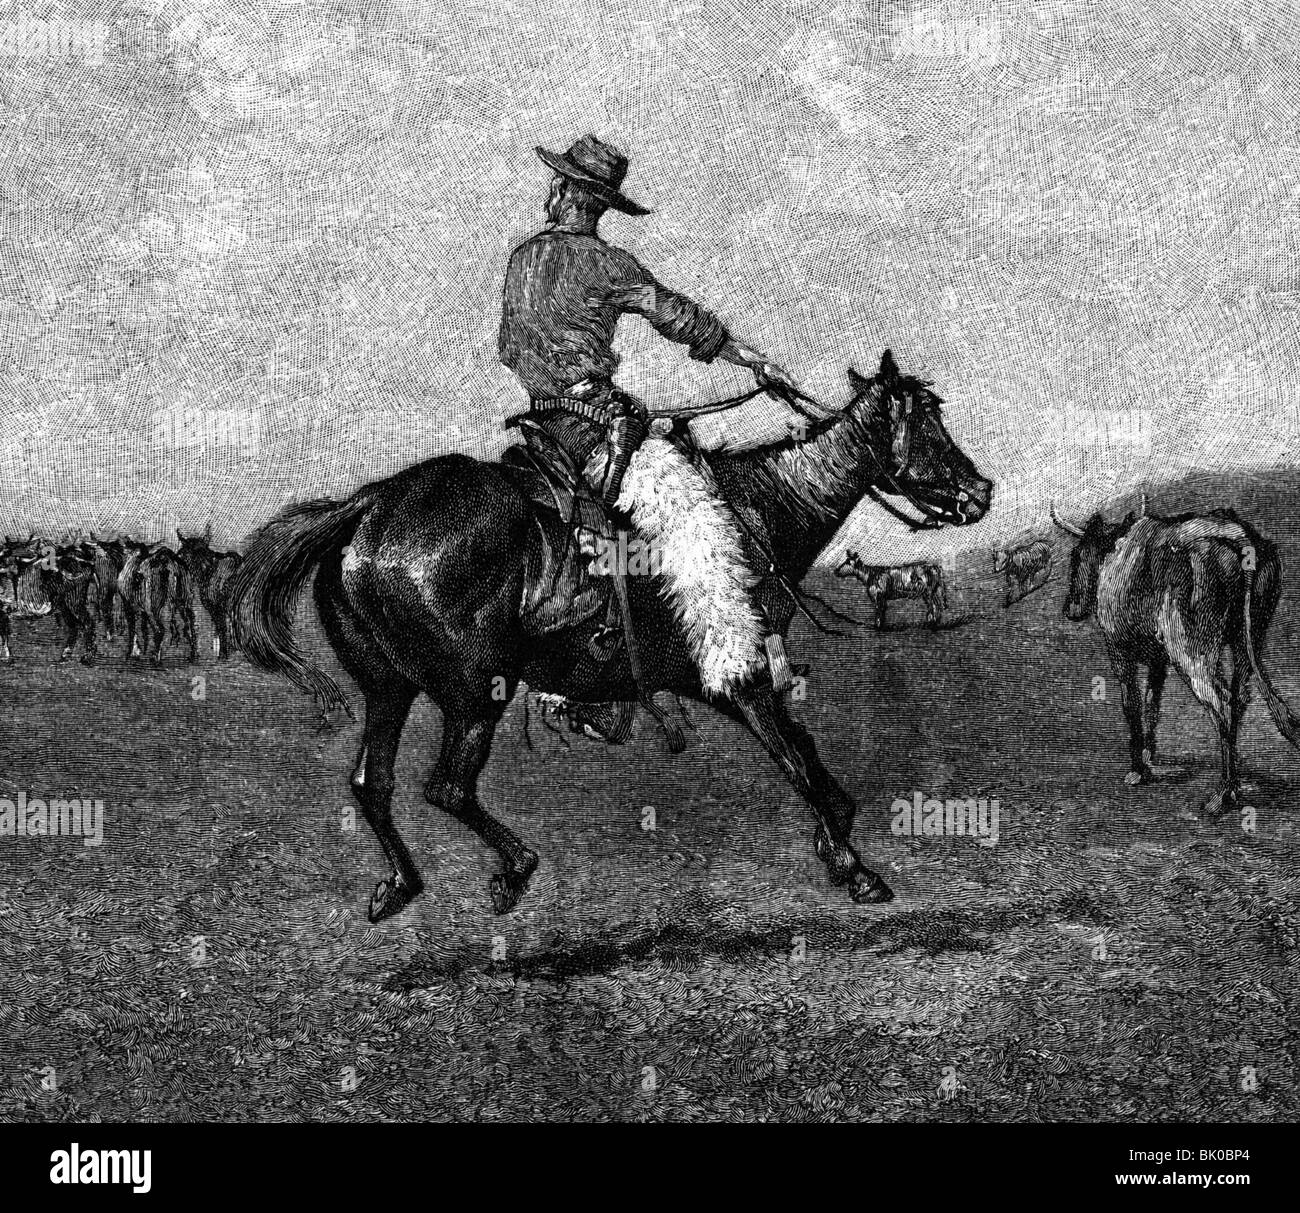 Geografia / viaggio, Stati Uniti d'America, persone, cowboy, riduzione del bestiame (Roung up), incisione del legno dopo la pittura di Frederick Remington, 19th secolo, Foto Stock